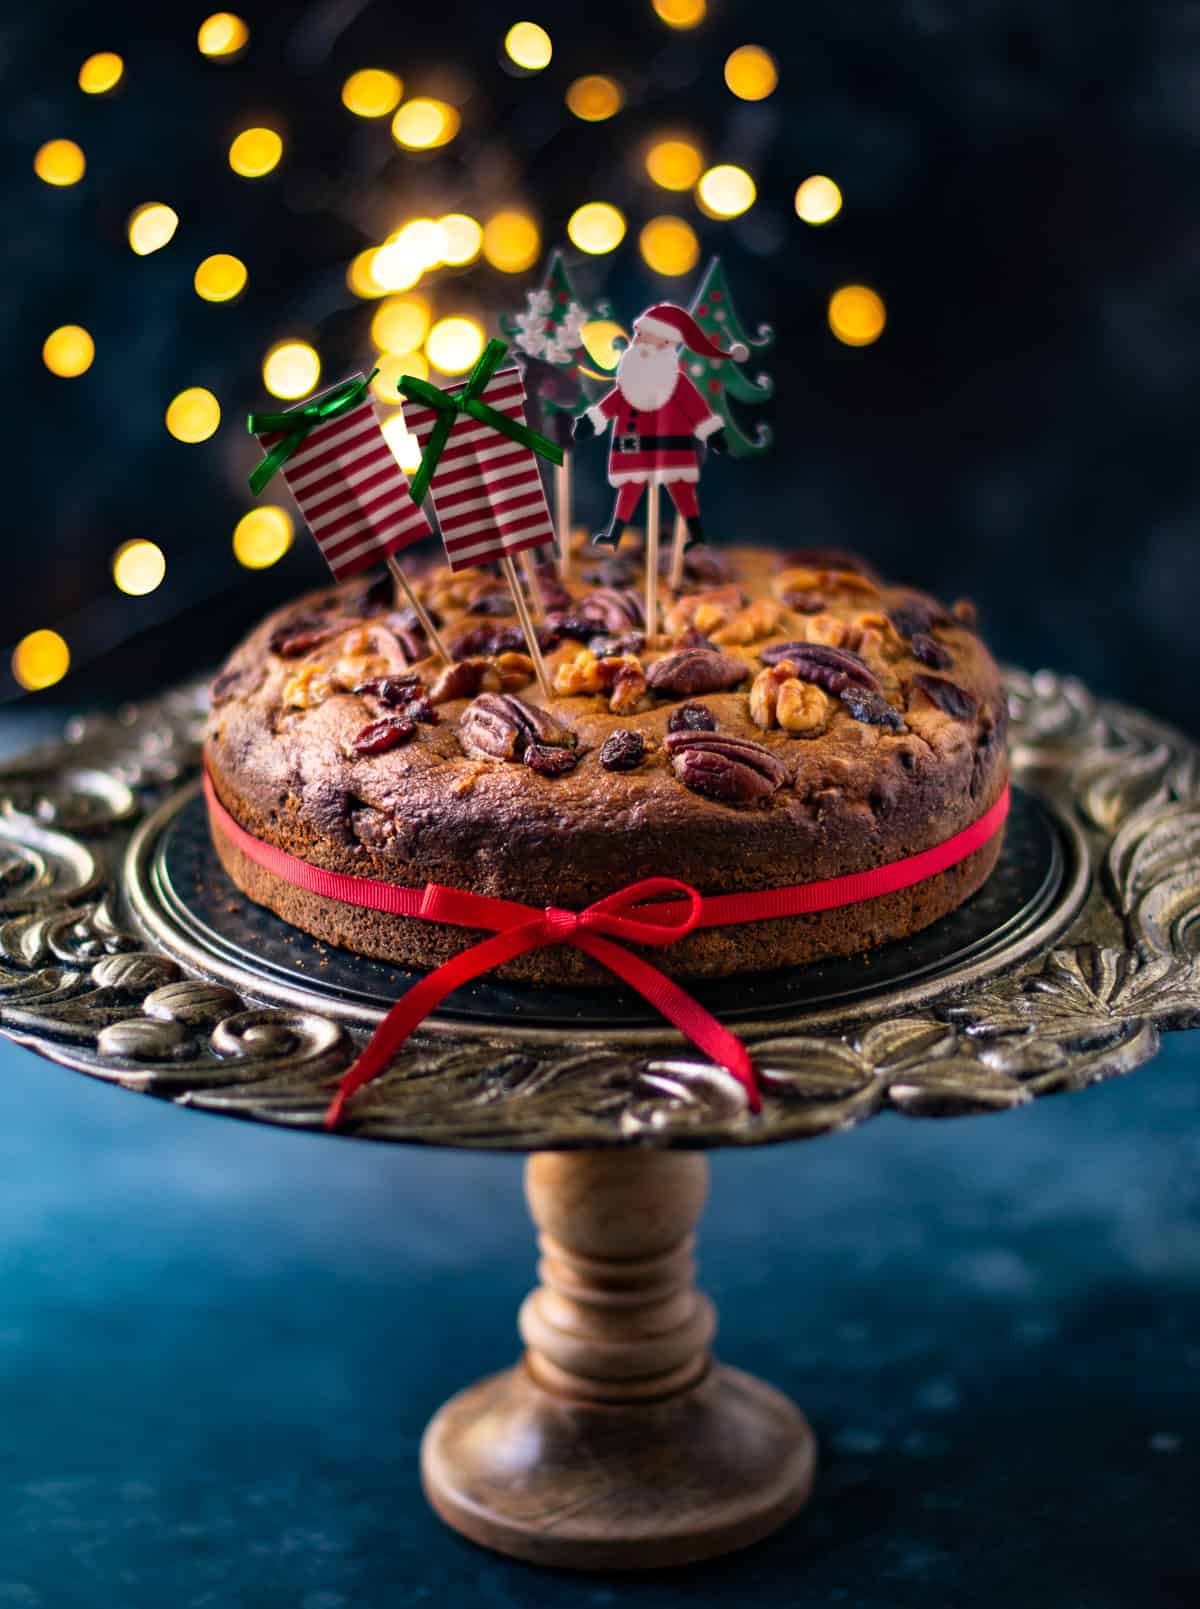 Dryfruit Cake || almond cake || whip cream cake decoration - YouTube